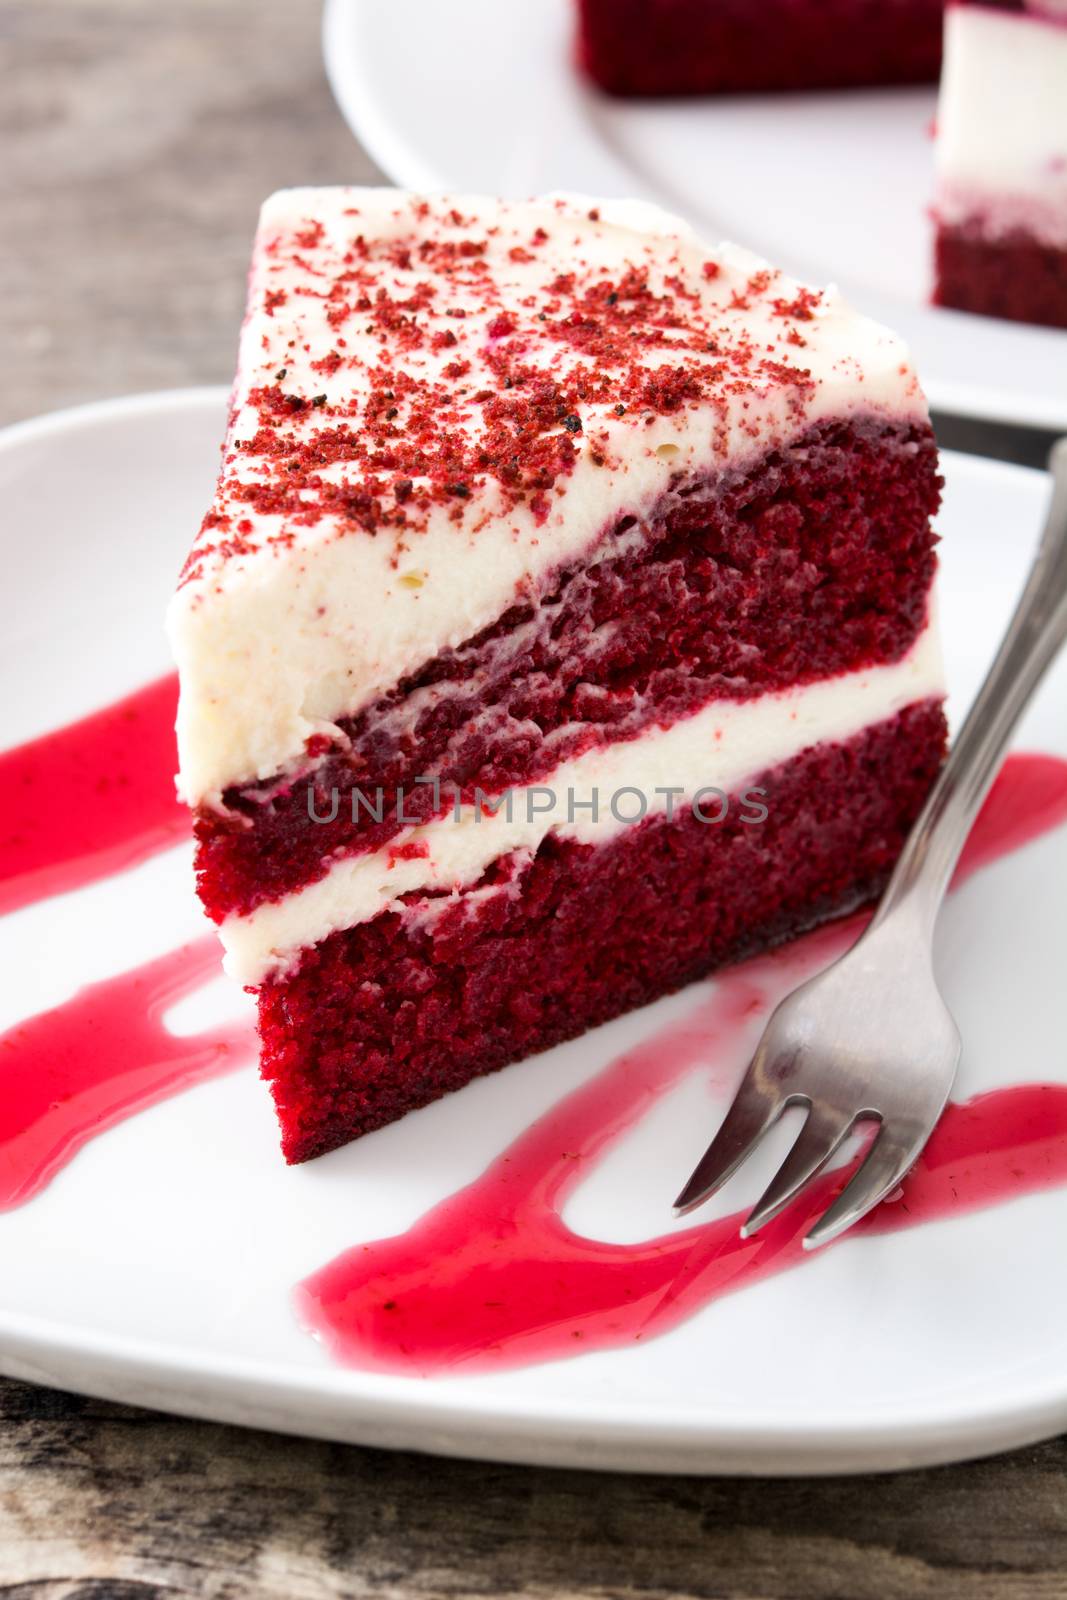 Red Velvet cake slice on wooden table.